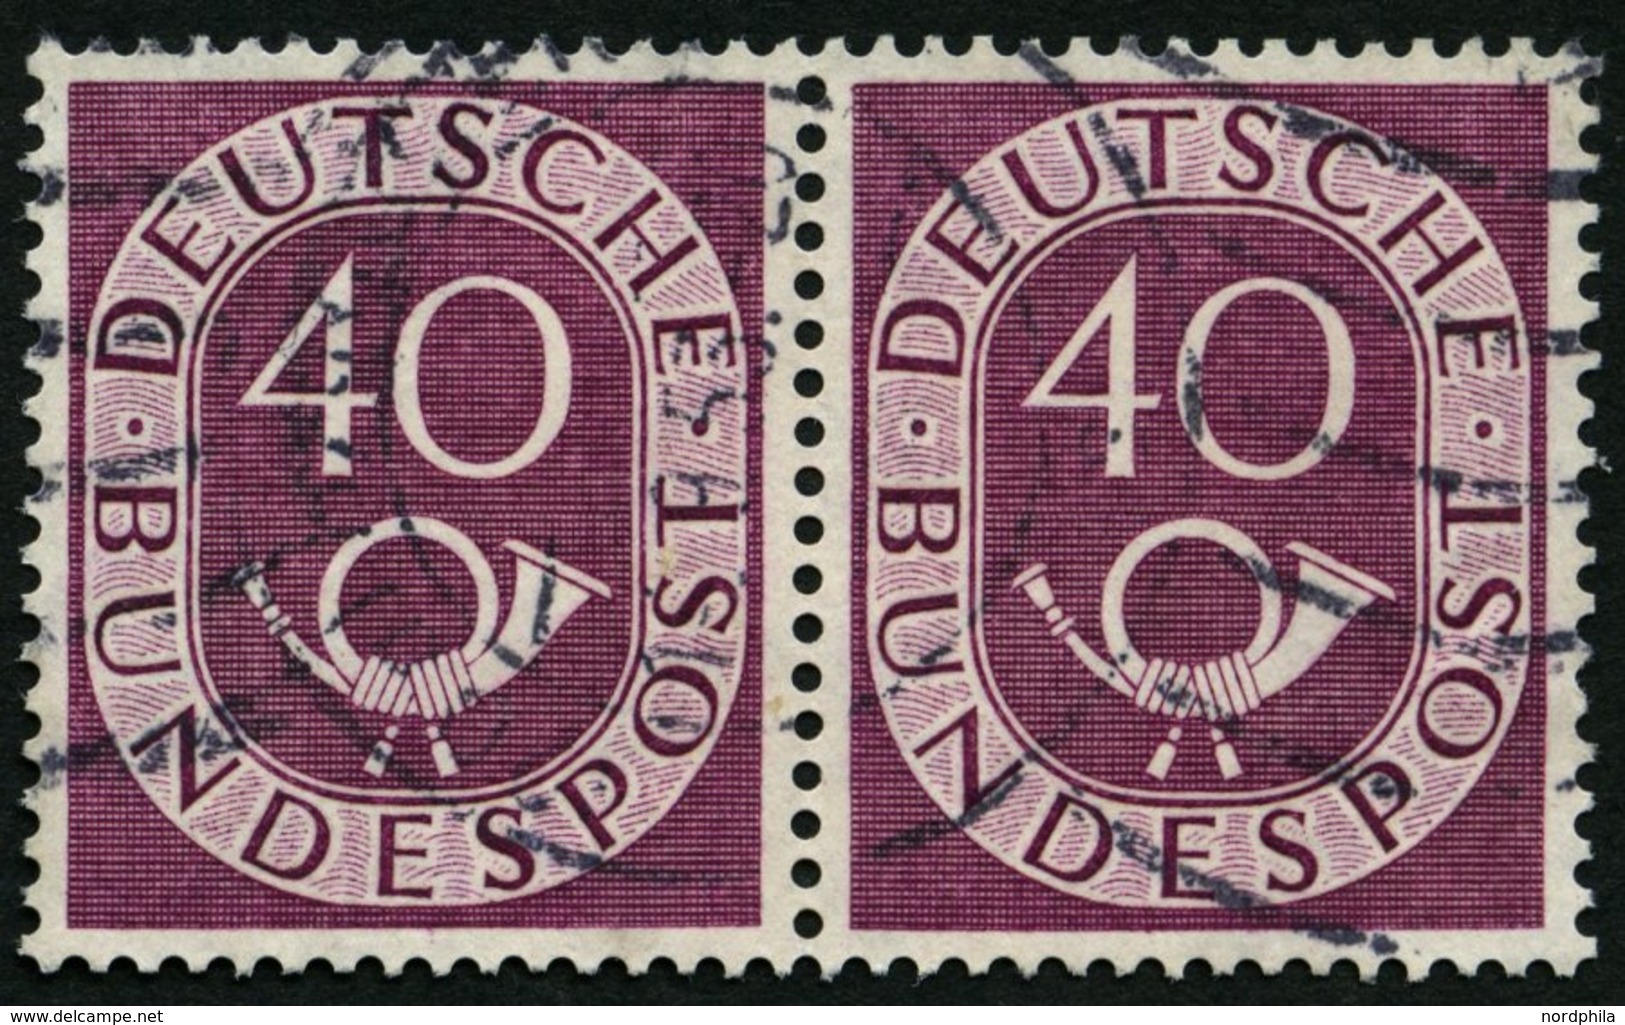 BUNDESREPUBLIK 133 Paar O, 1951, 40 Pf. Posthorn Im Waagerechten Paar, Feinst, Mi. 250.- - Used Stamps